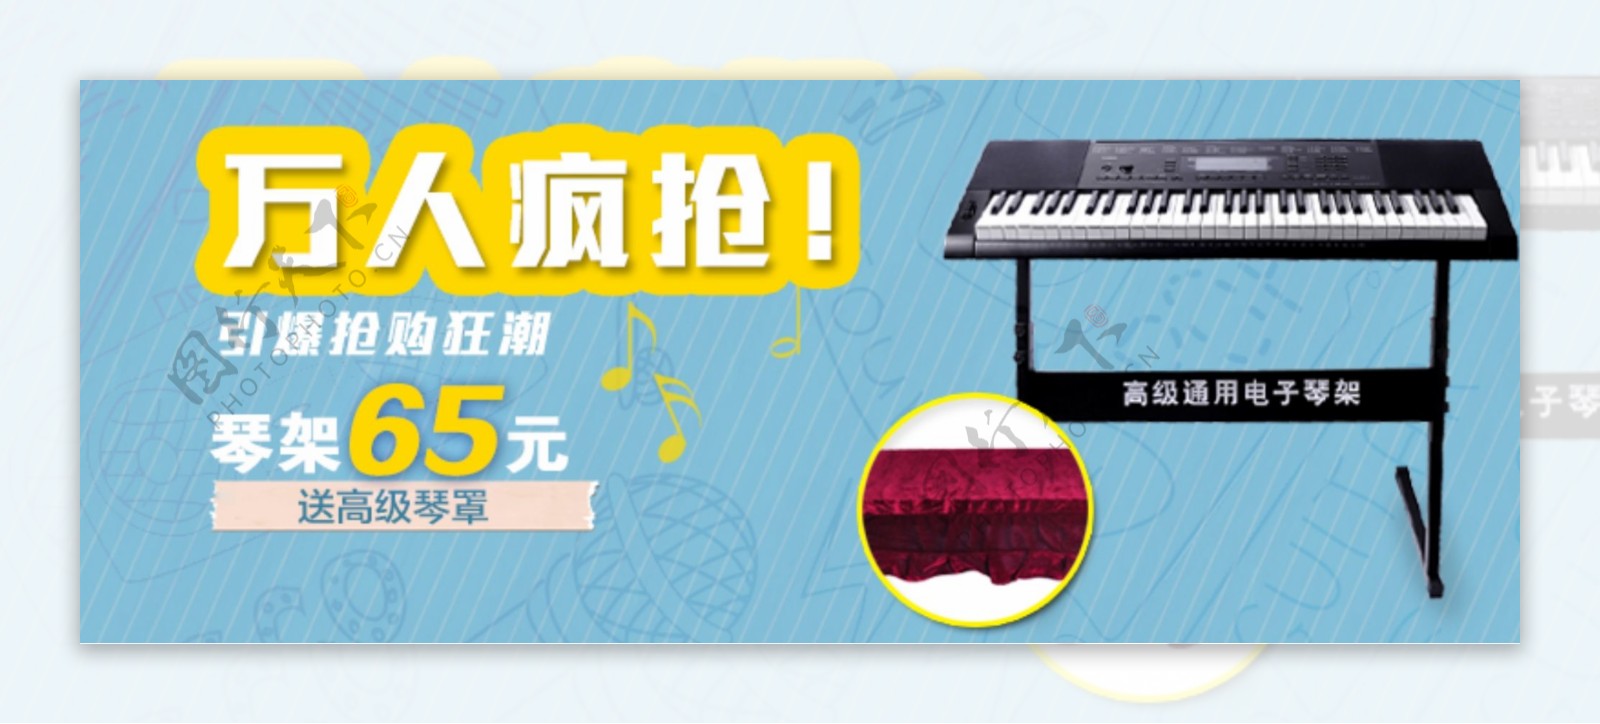 钢琴类海报